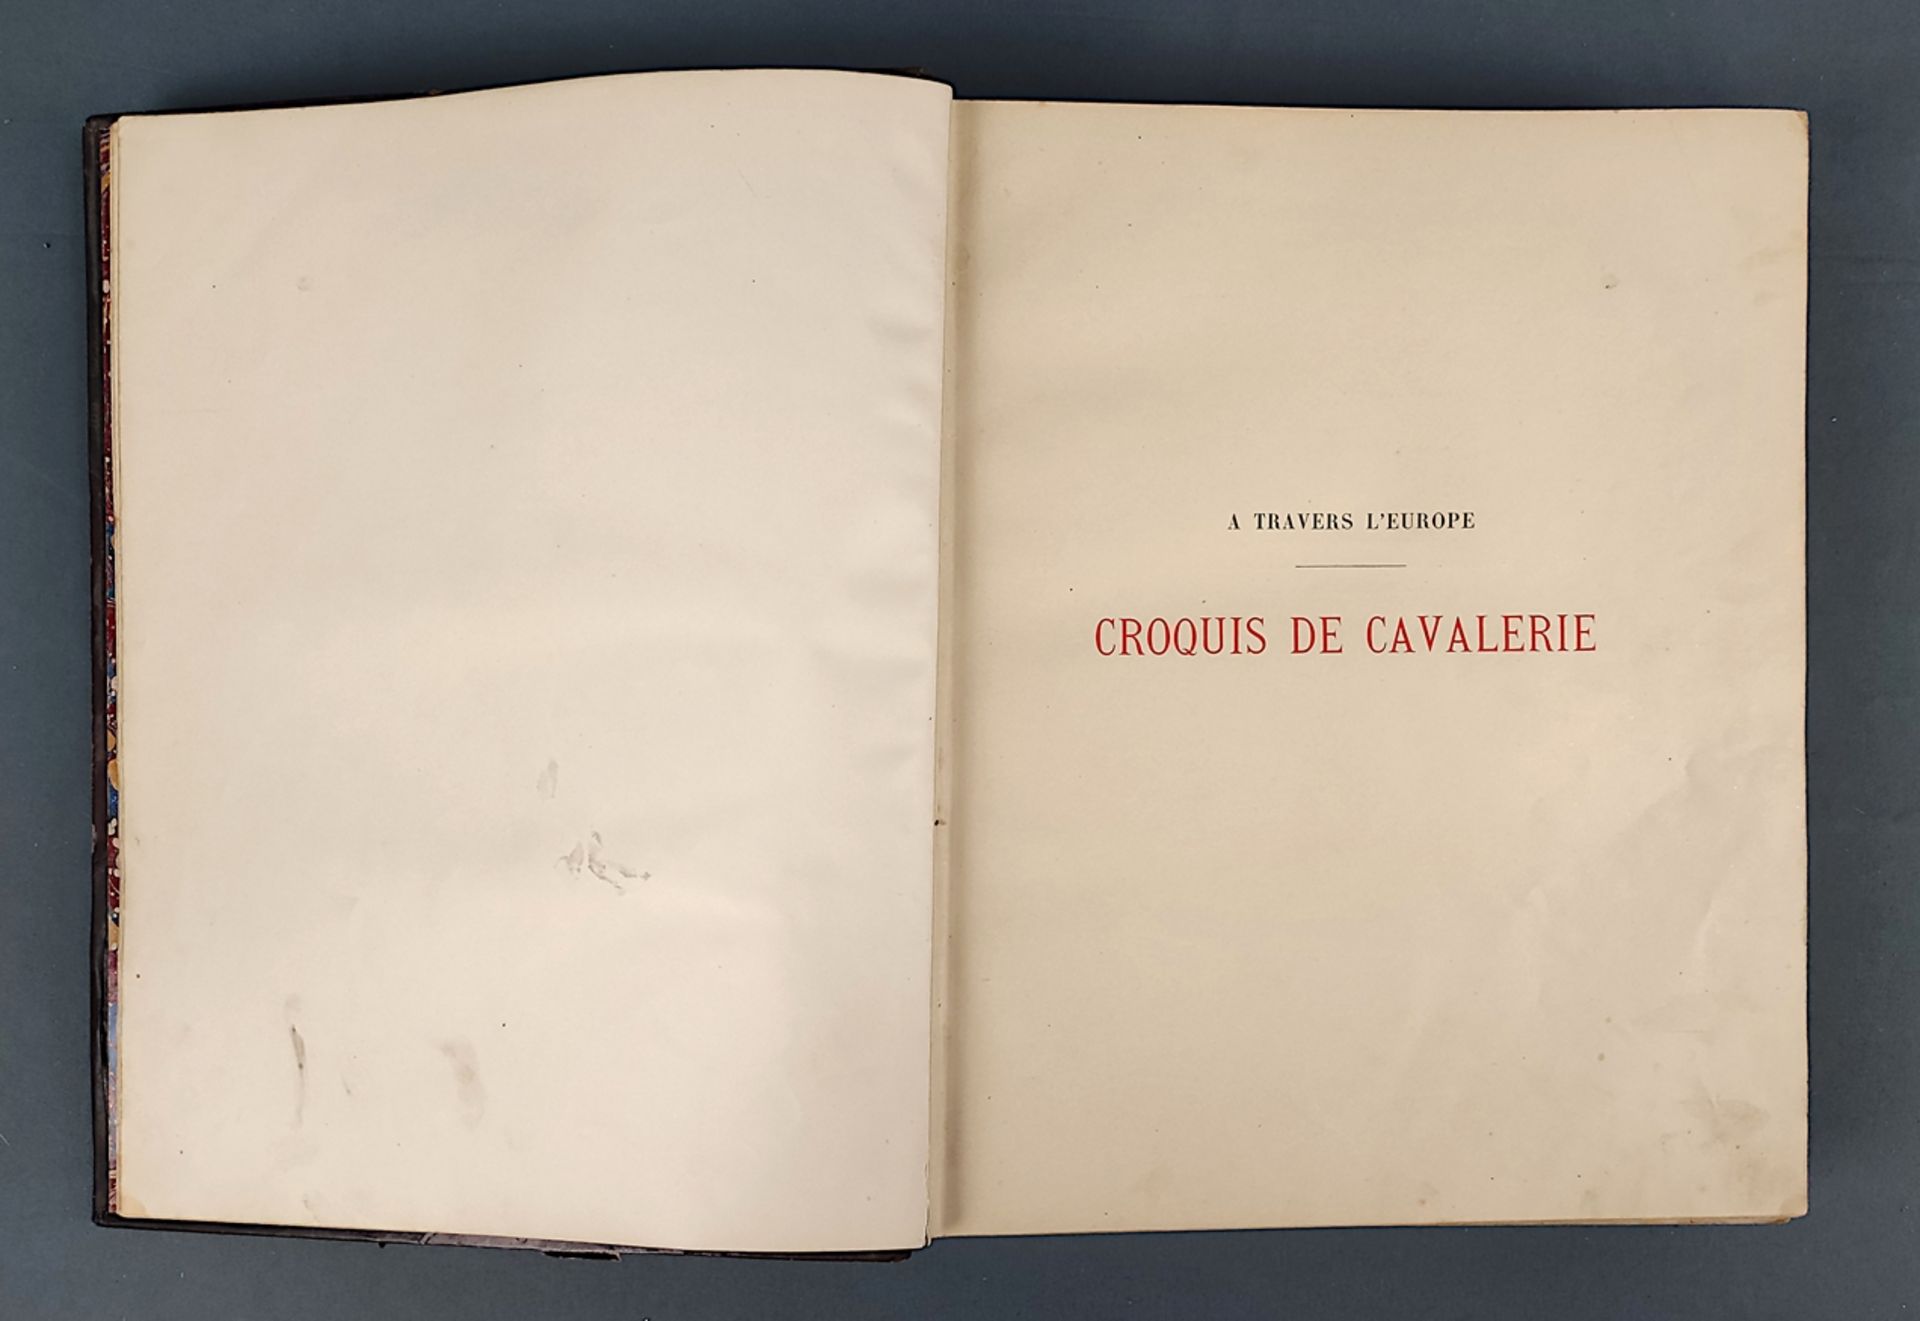 Book, Vallet, L. "A travers l'Europe. Croquis de cavalerie", Paris 1893, Libraire de Firmin-Didot e - Image 4 of 7